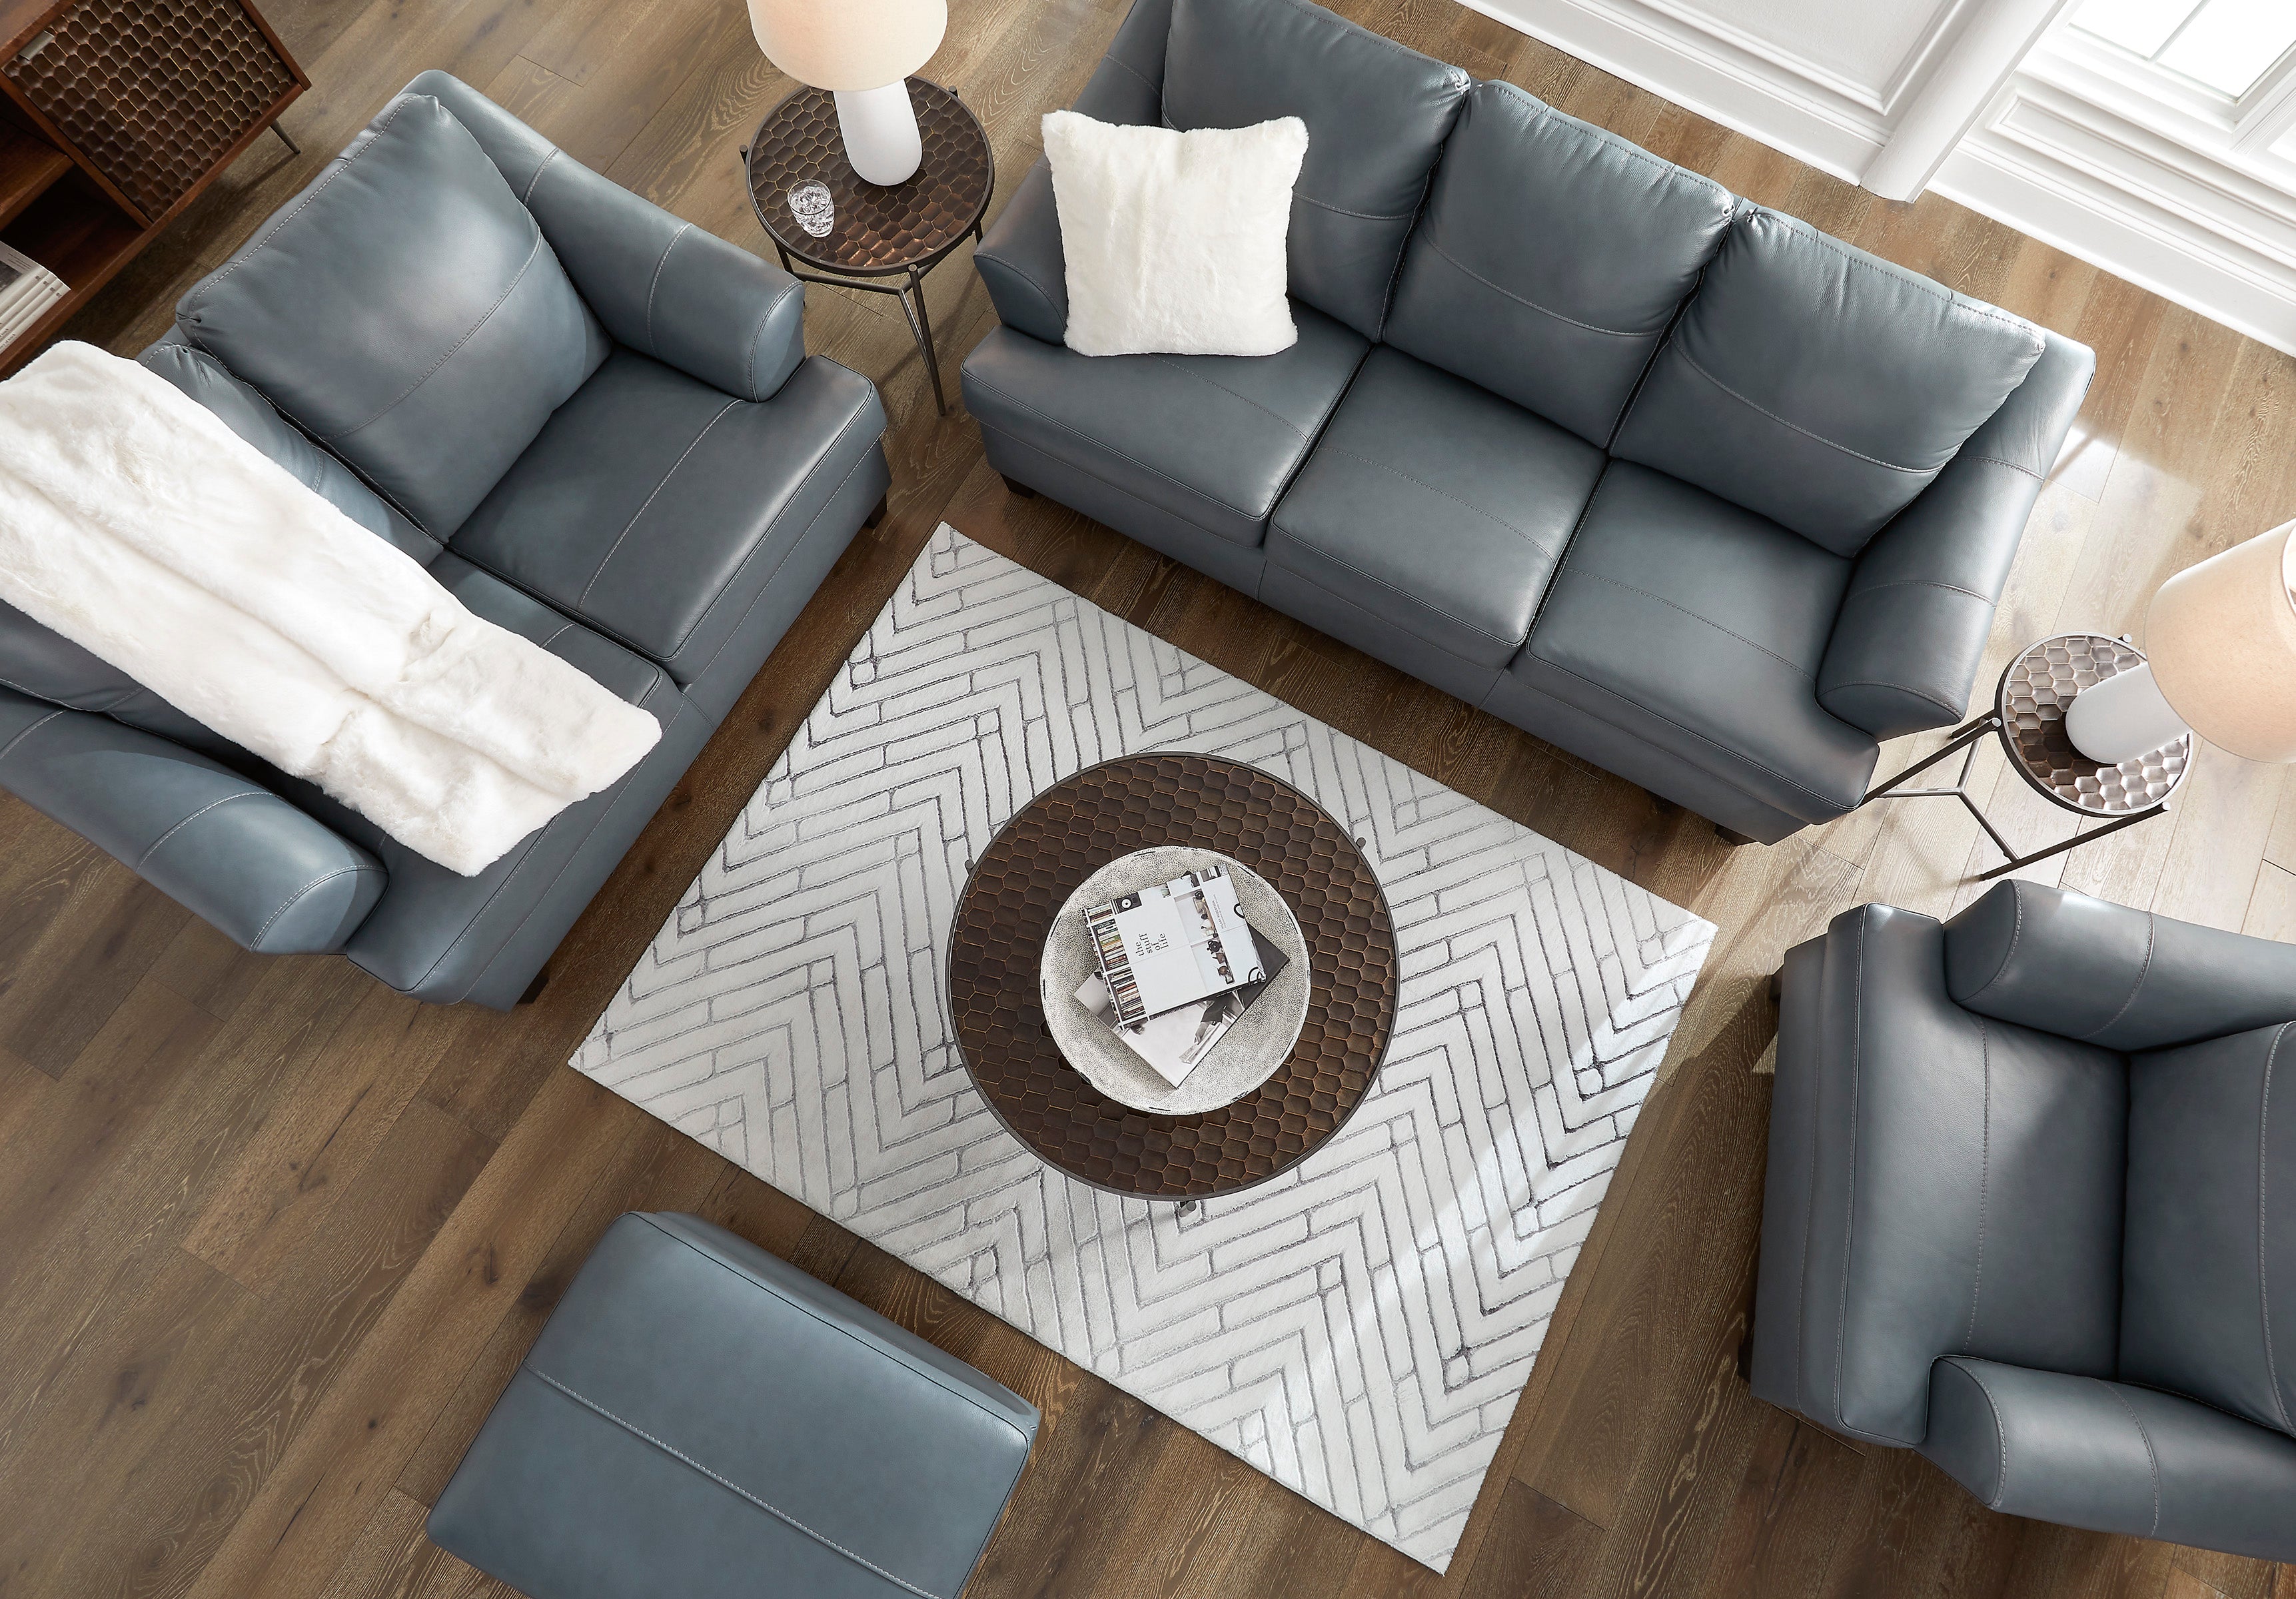 Genoa Steel Leather Living Room Set